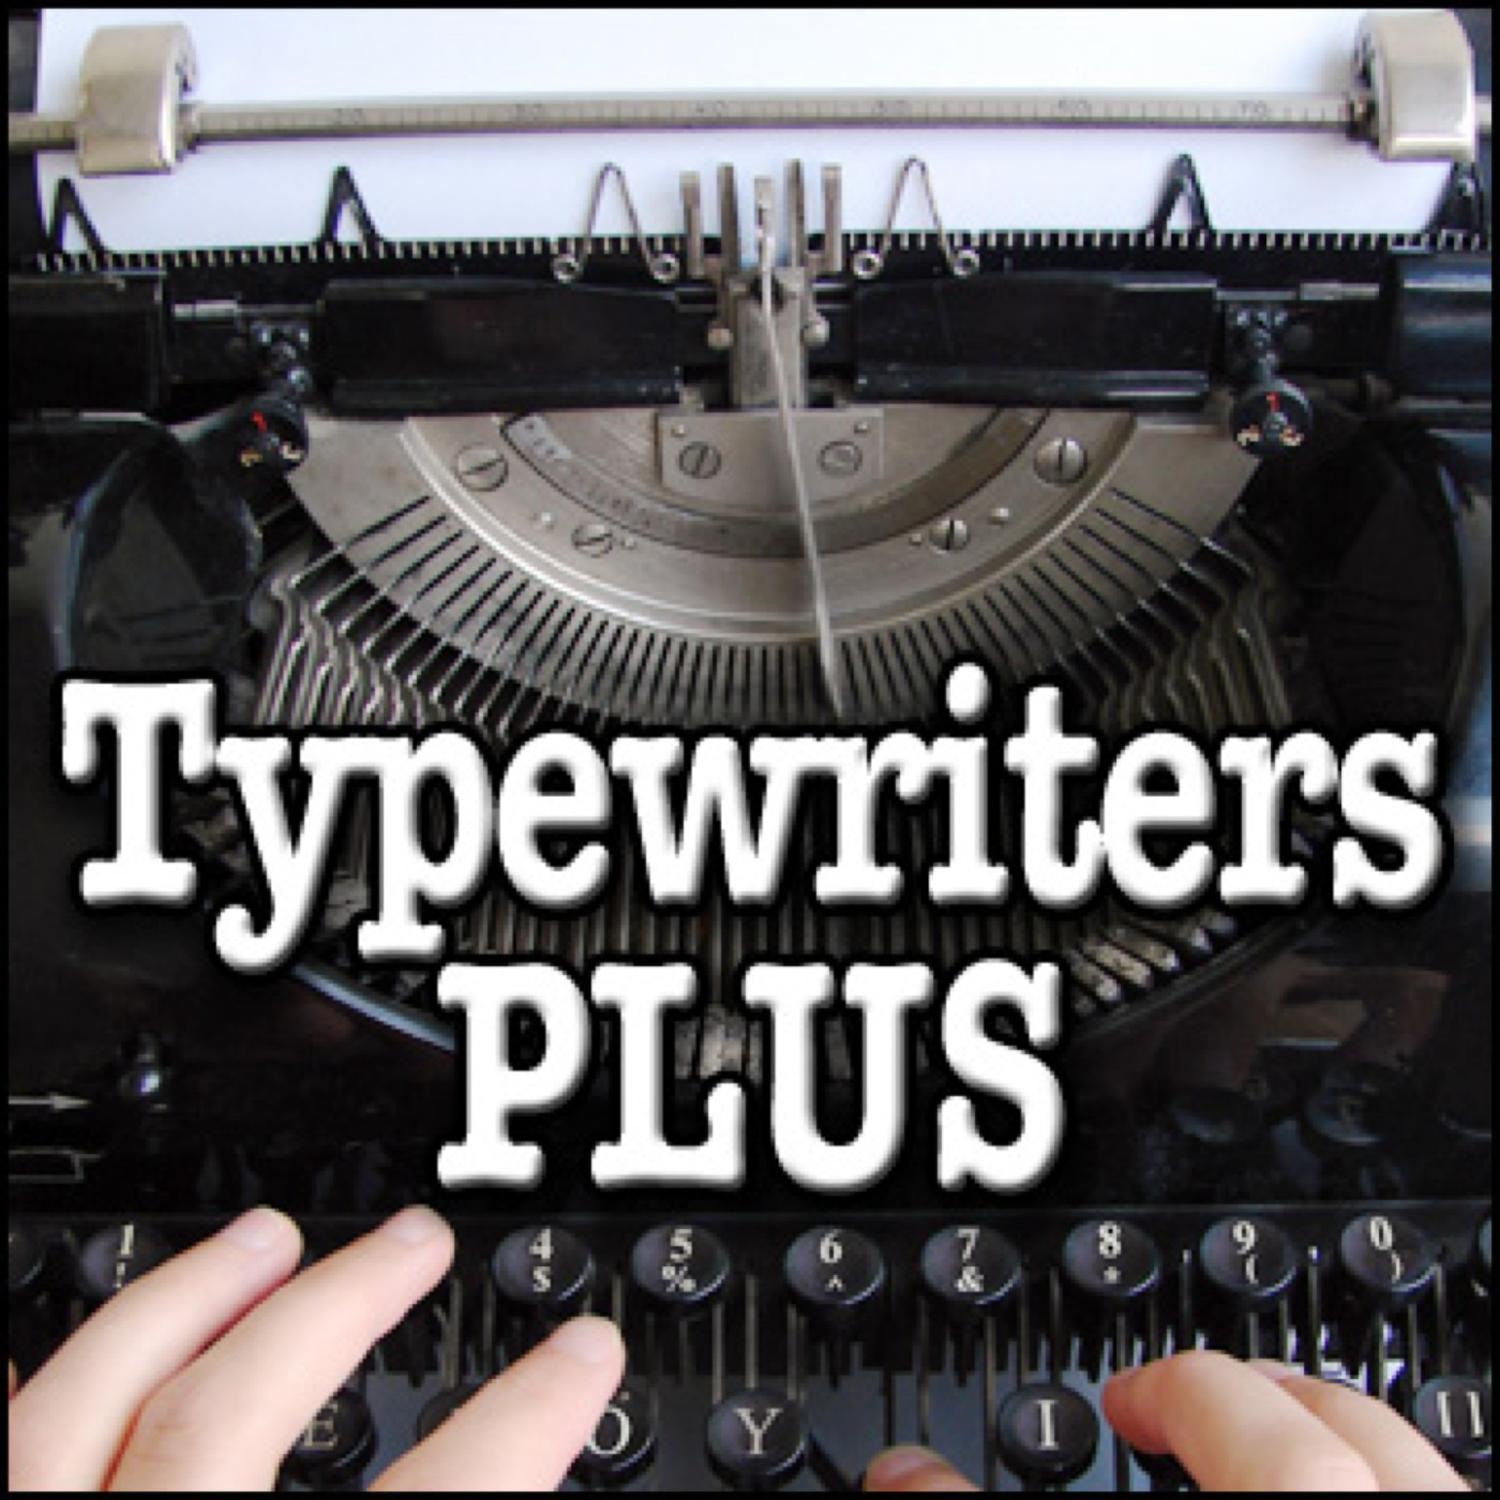 Typewriter, Manual - Large Antique Underwood Typewriter, Circa 1900: Typing, Fast, Typewriters, FX